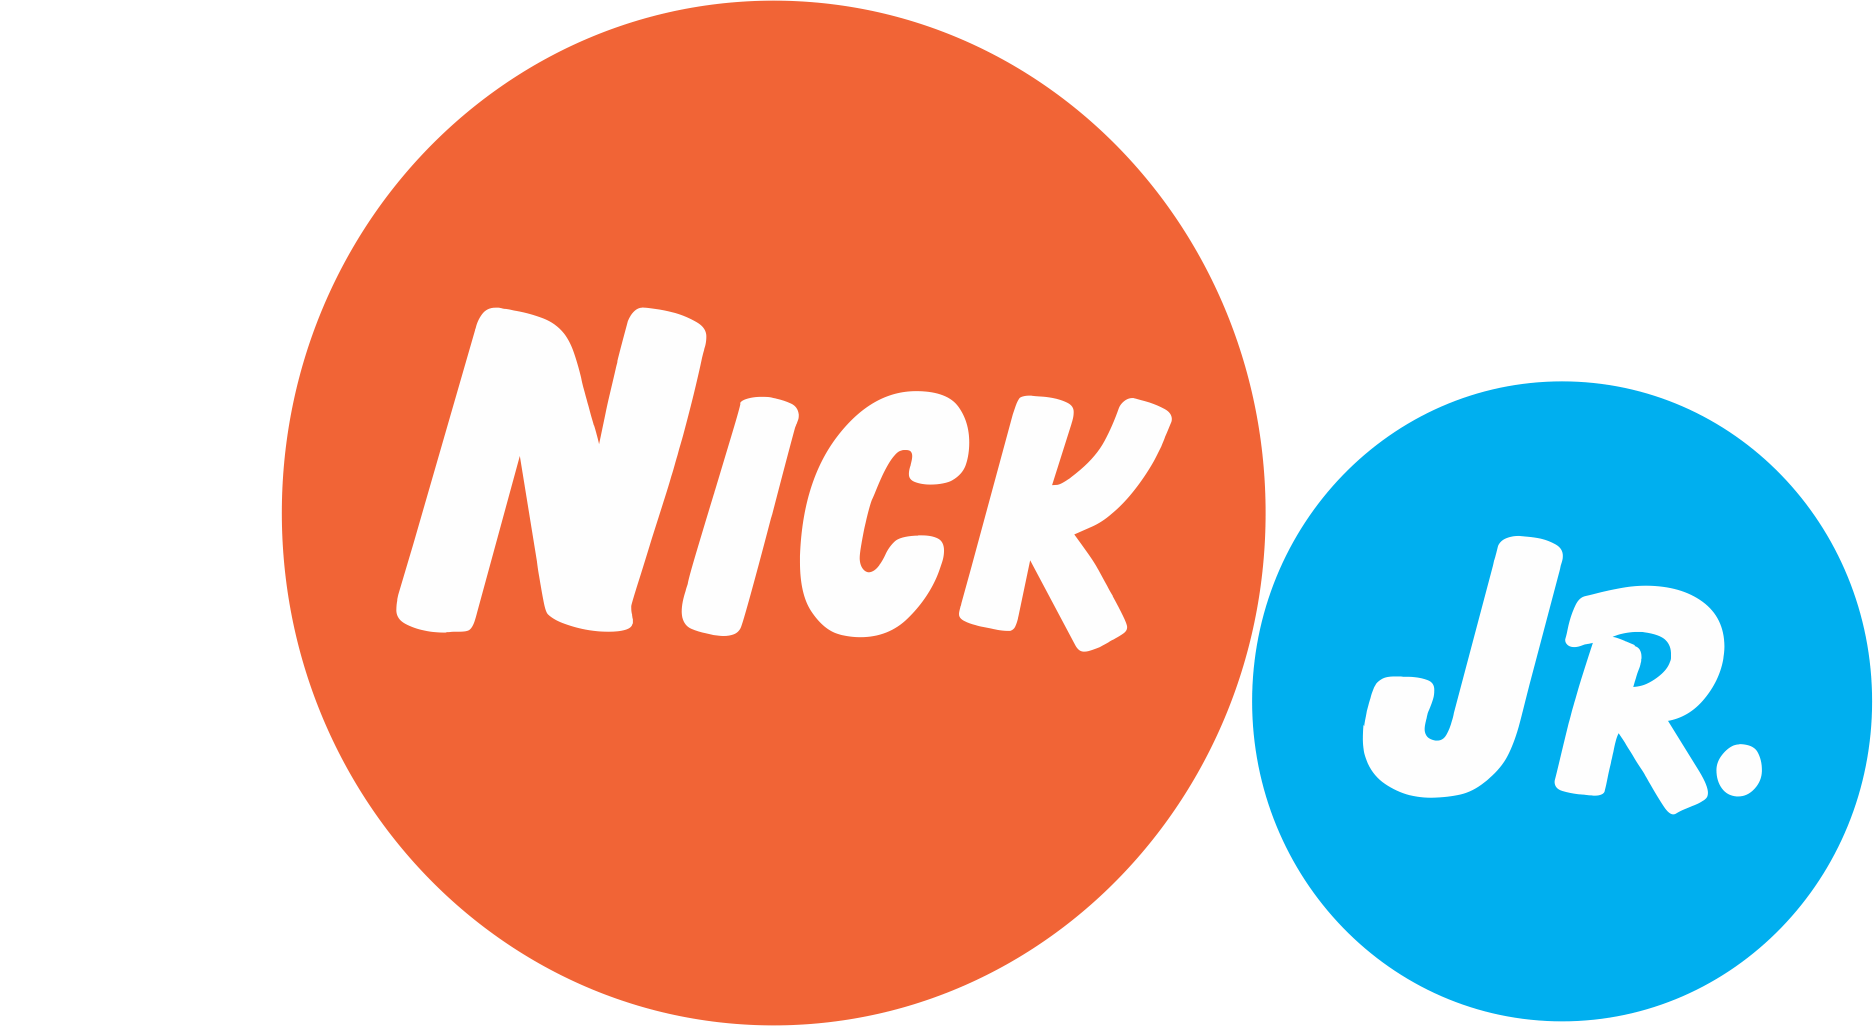 Roblox Nick Jr Logo